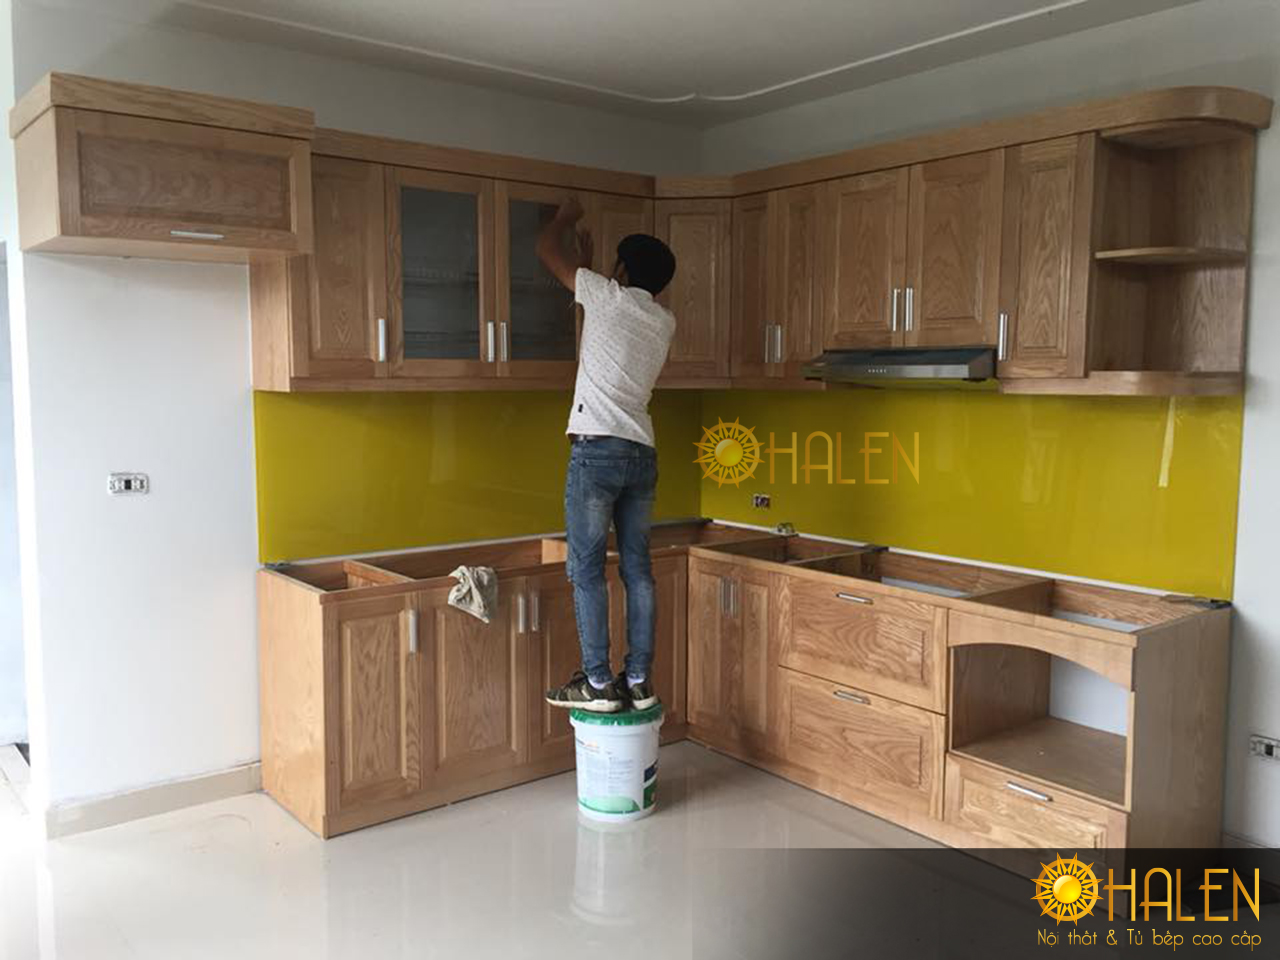 Thợ thi công Ohalen đang tiến hành lắp đặt tủ bếp cho gia đình chị Nhung